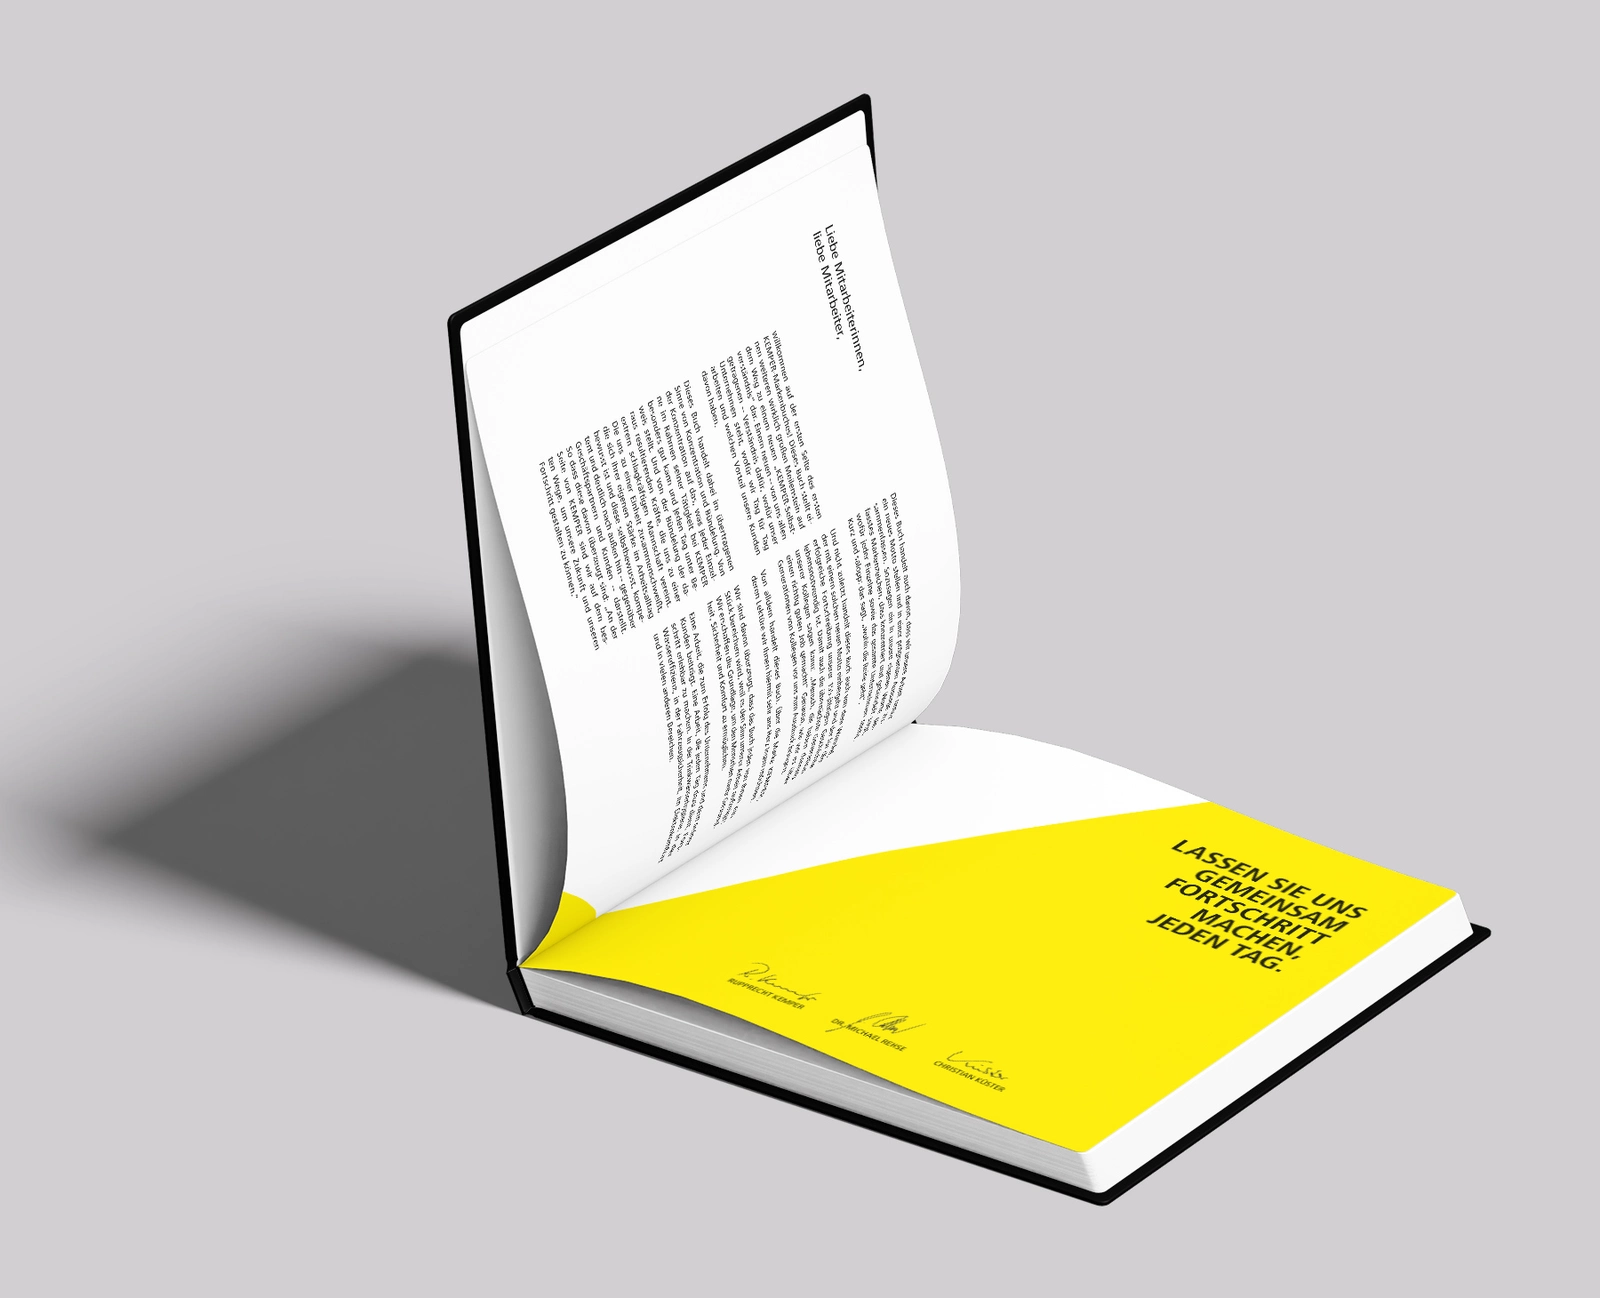 Das Bild zeigt ein aufgeklapptes Markenbuch von Kemper in gelb schwarz.